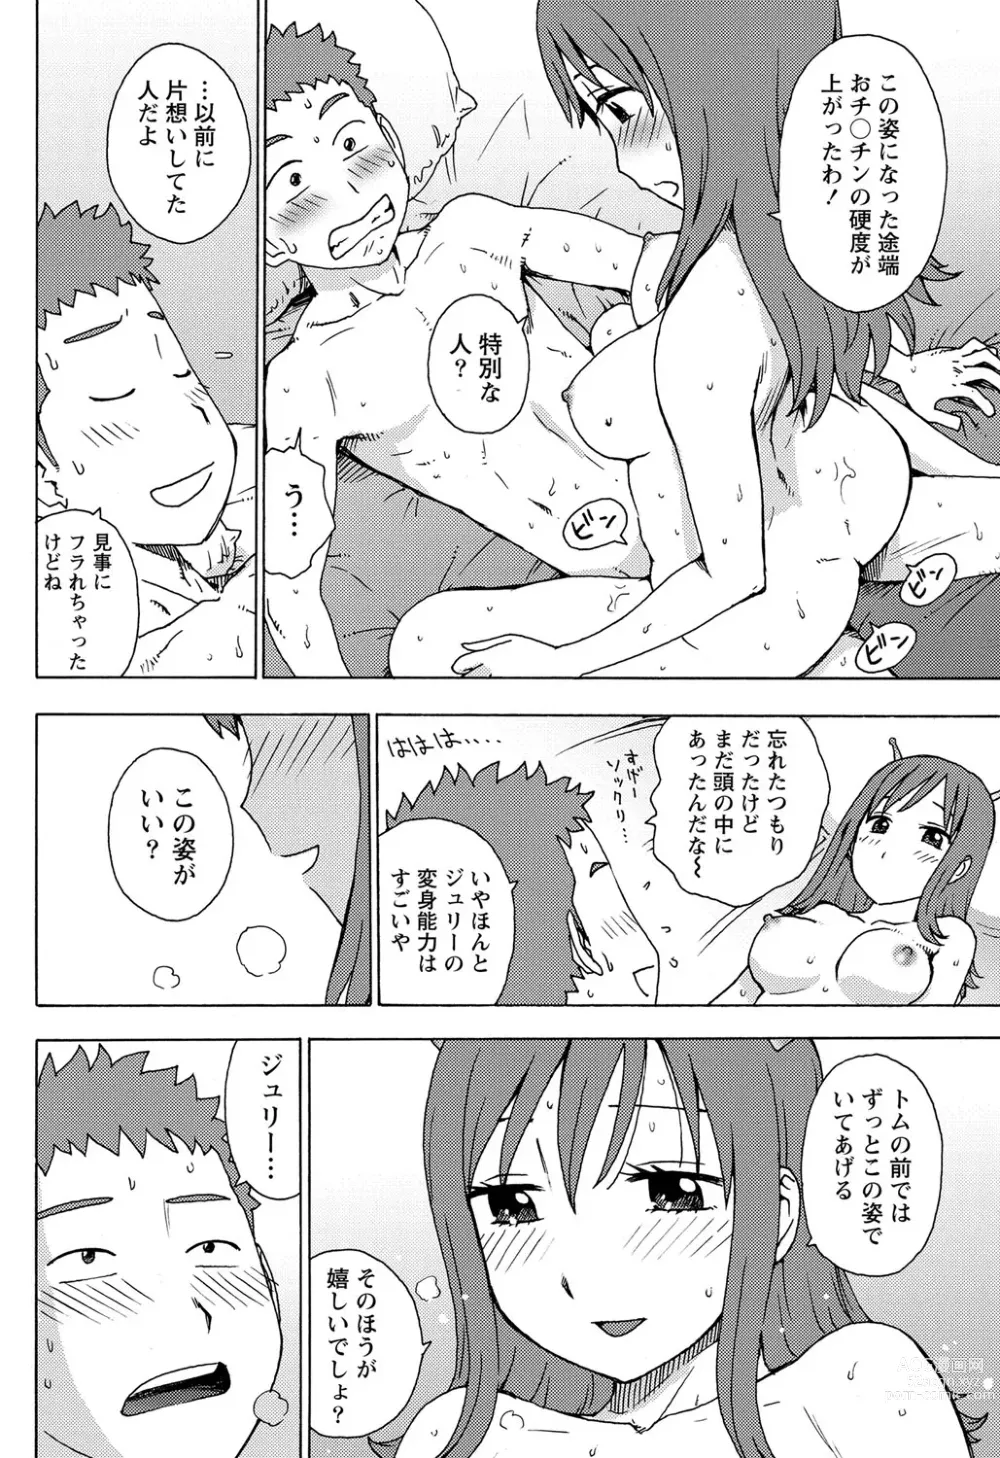 Page 6 of manga Saraware